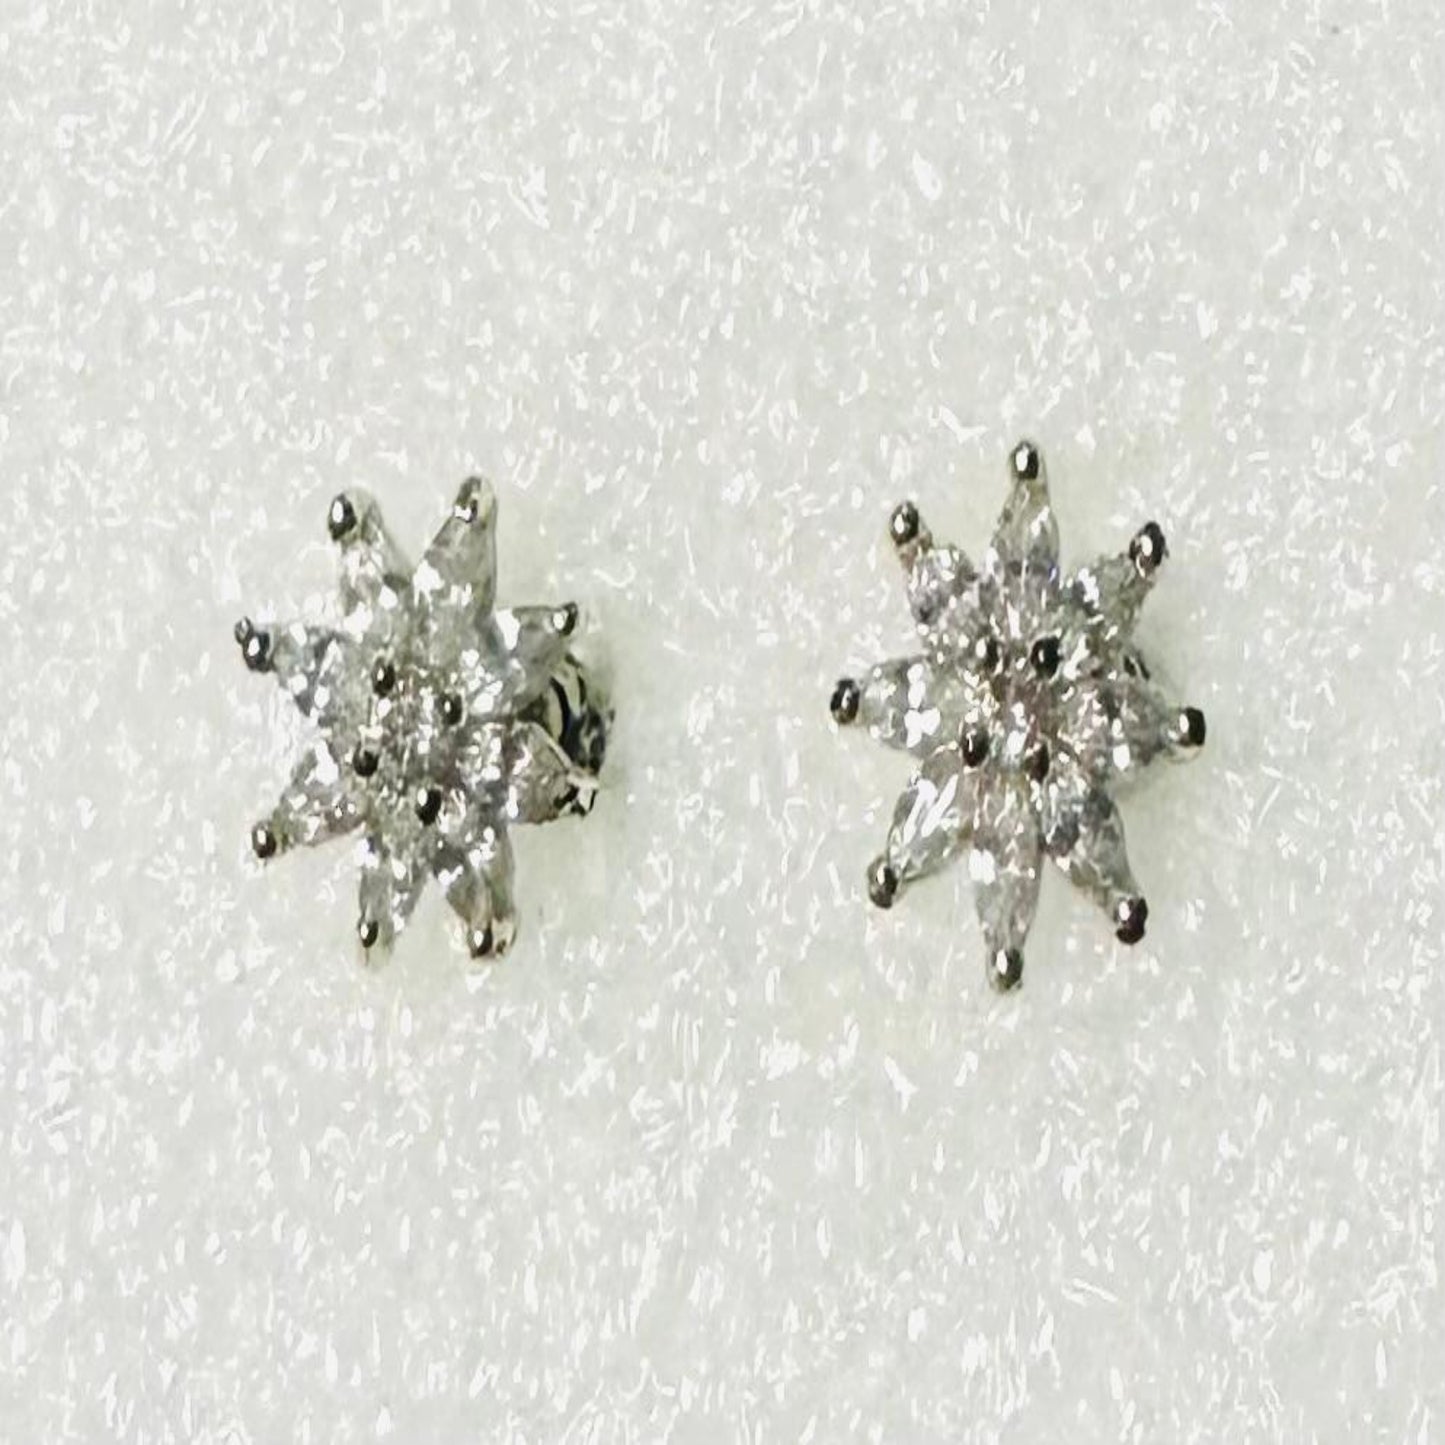 NORA Silver Earrings